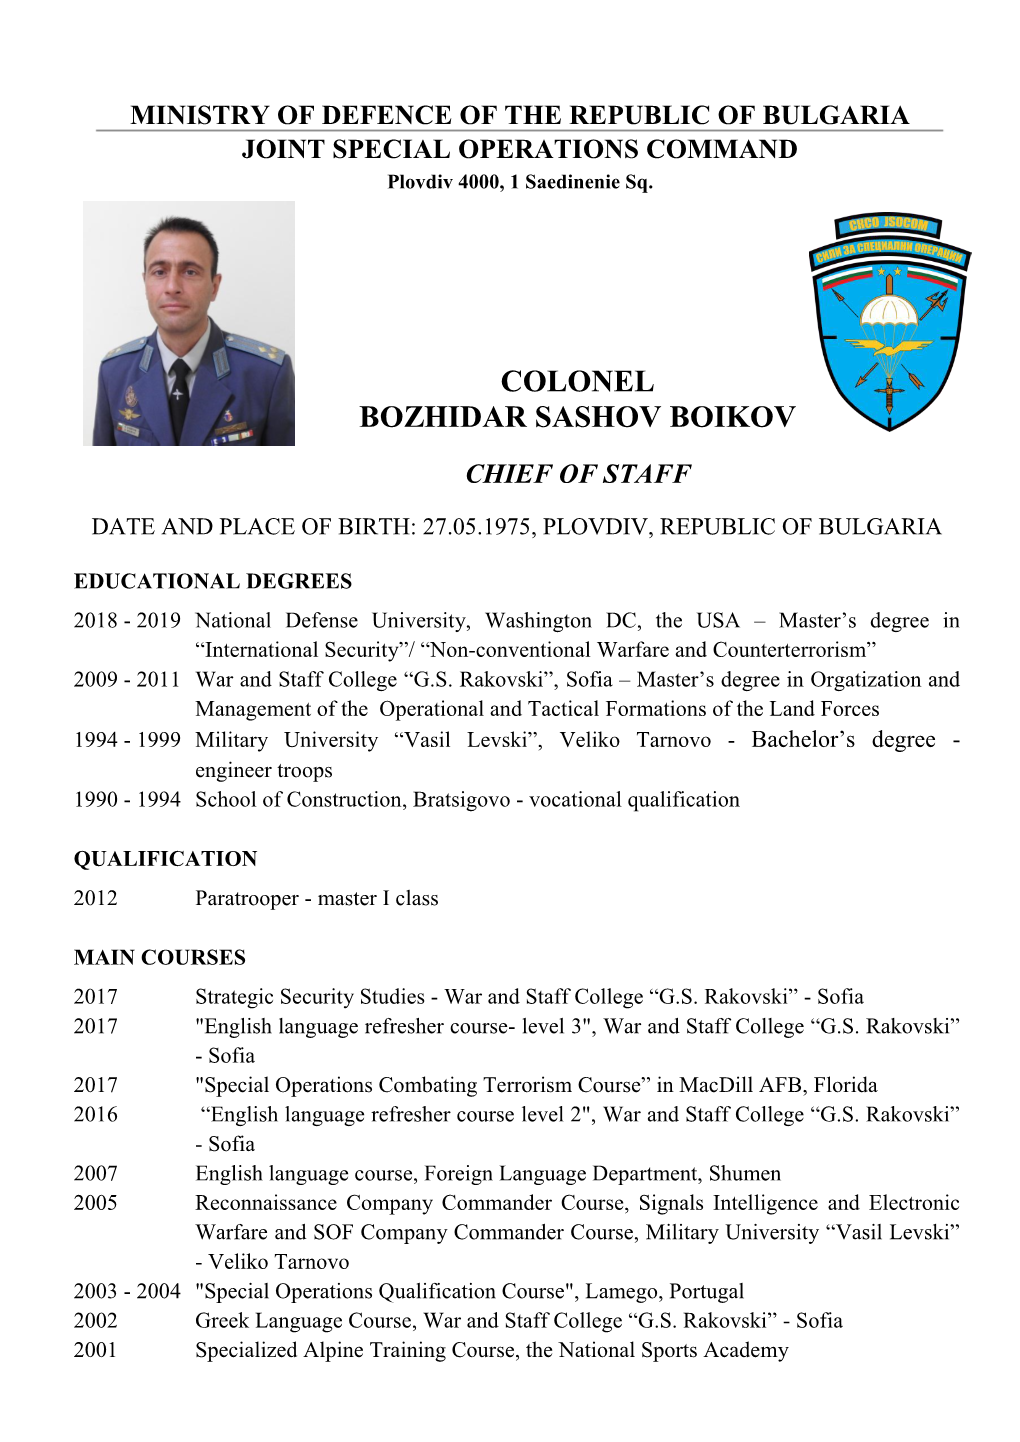 Colonel Bozhidar Sashov Boikov